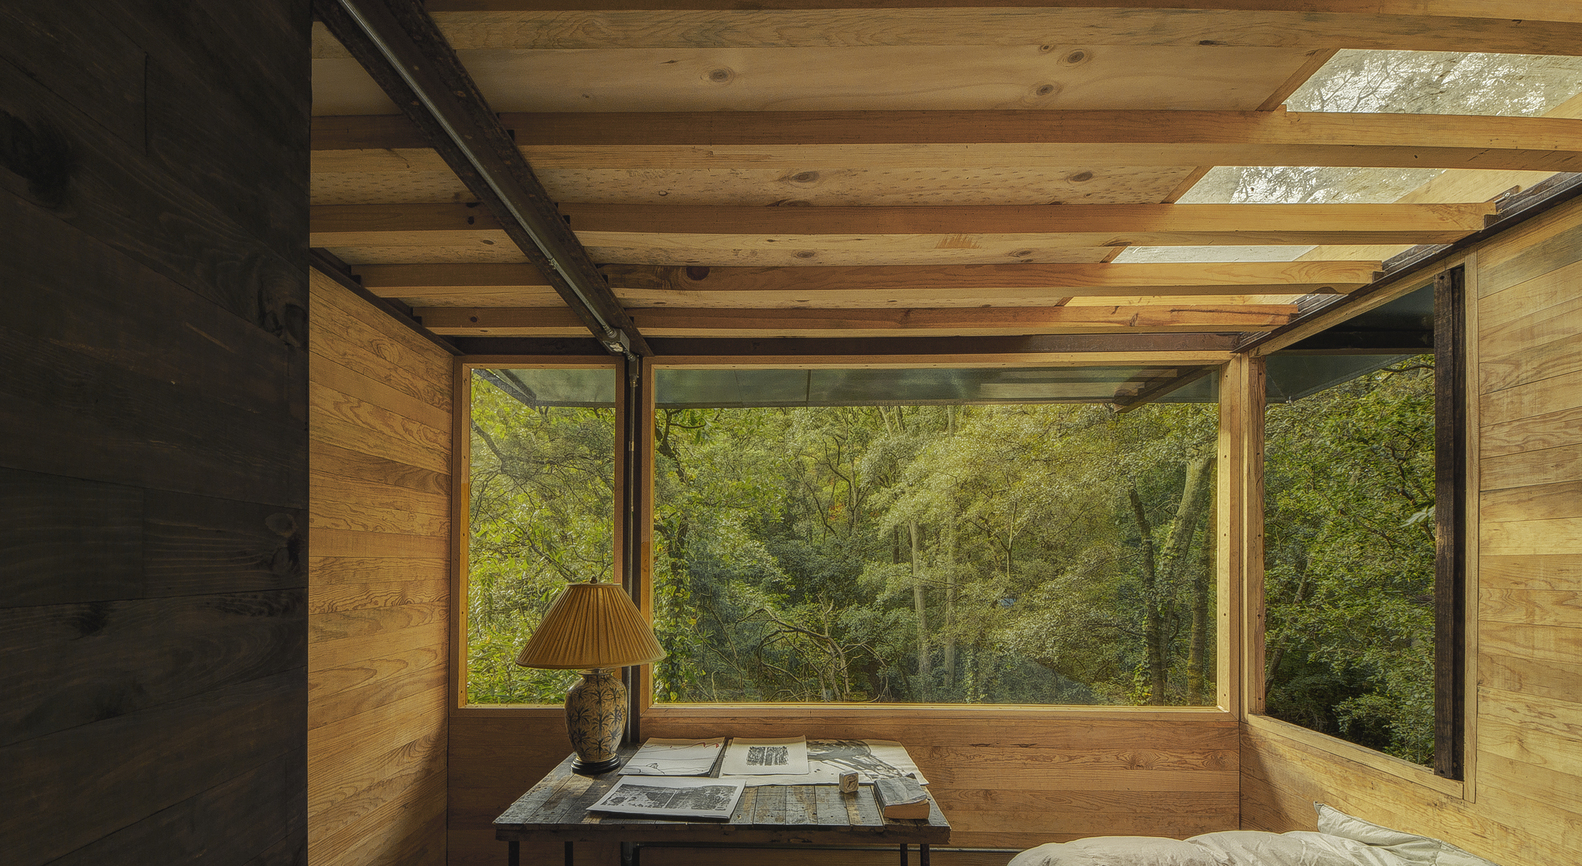 Hình ảnh một góc phòng ngủ với bàn gỗ đặt đèn chụp, cửa kính lớn nhìn ra rừng cây xanh